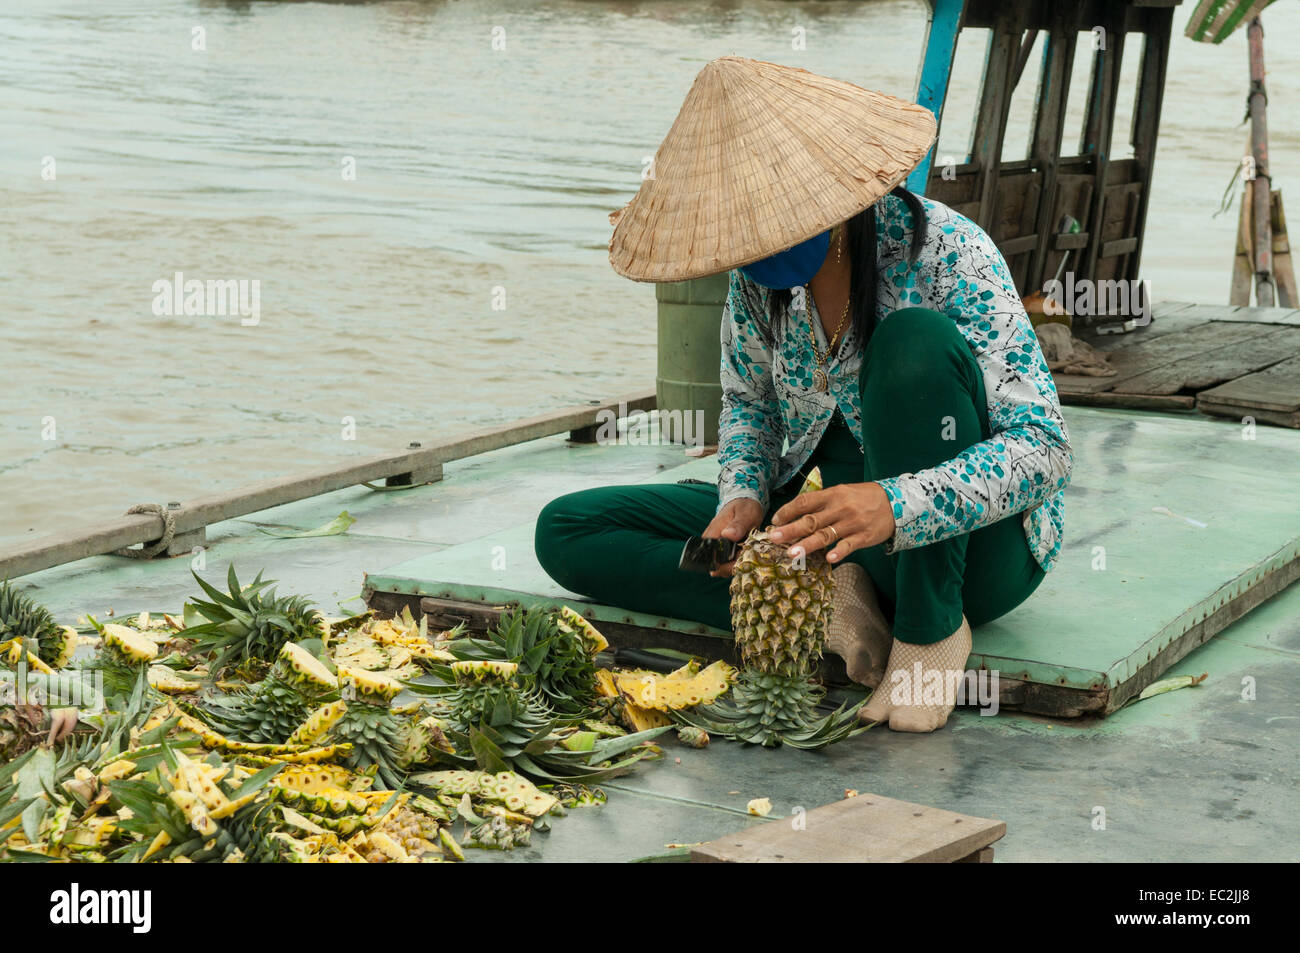 Coupe d'Ananas au marché flottant de Cai Rang, au Vietnam Banque D'Images